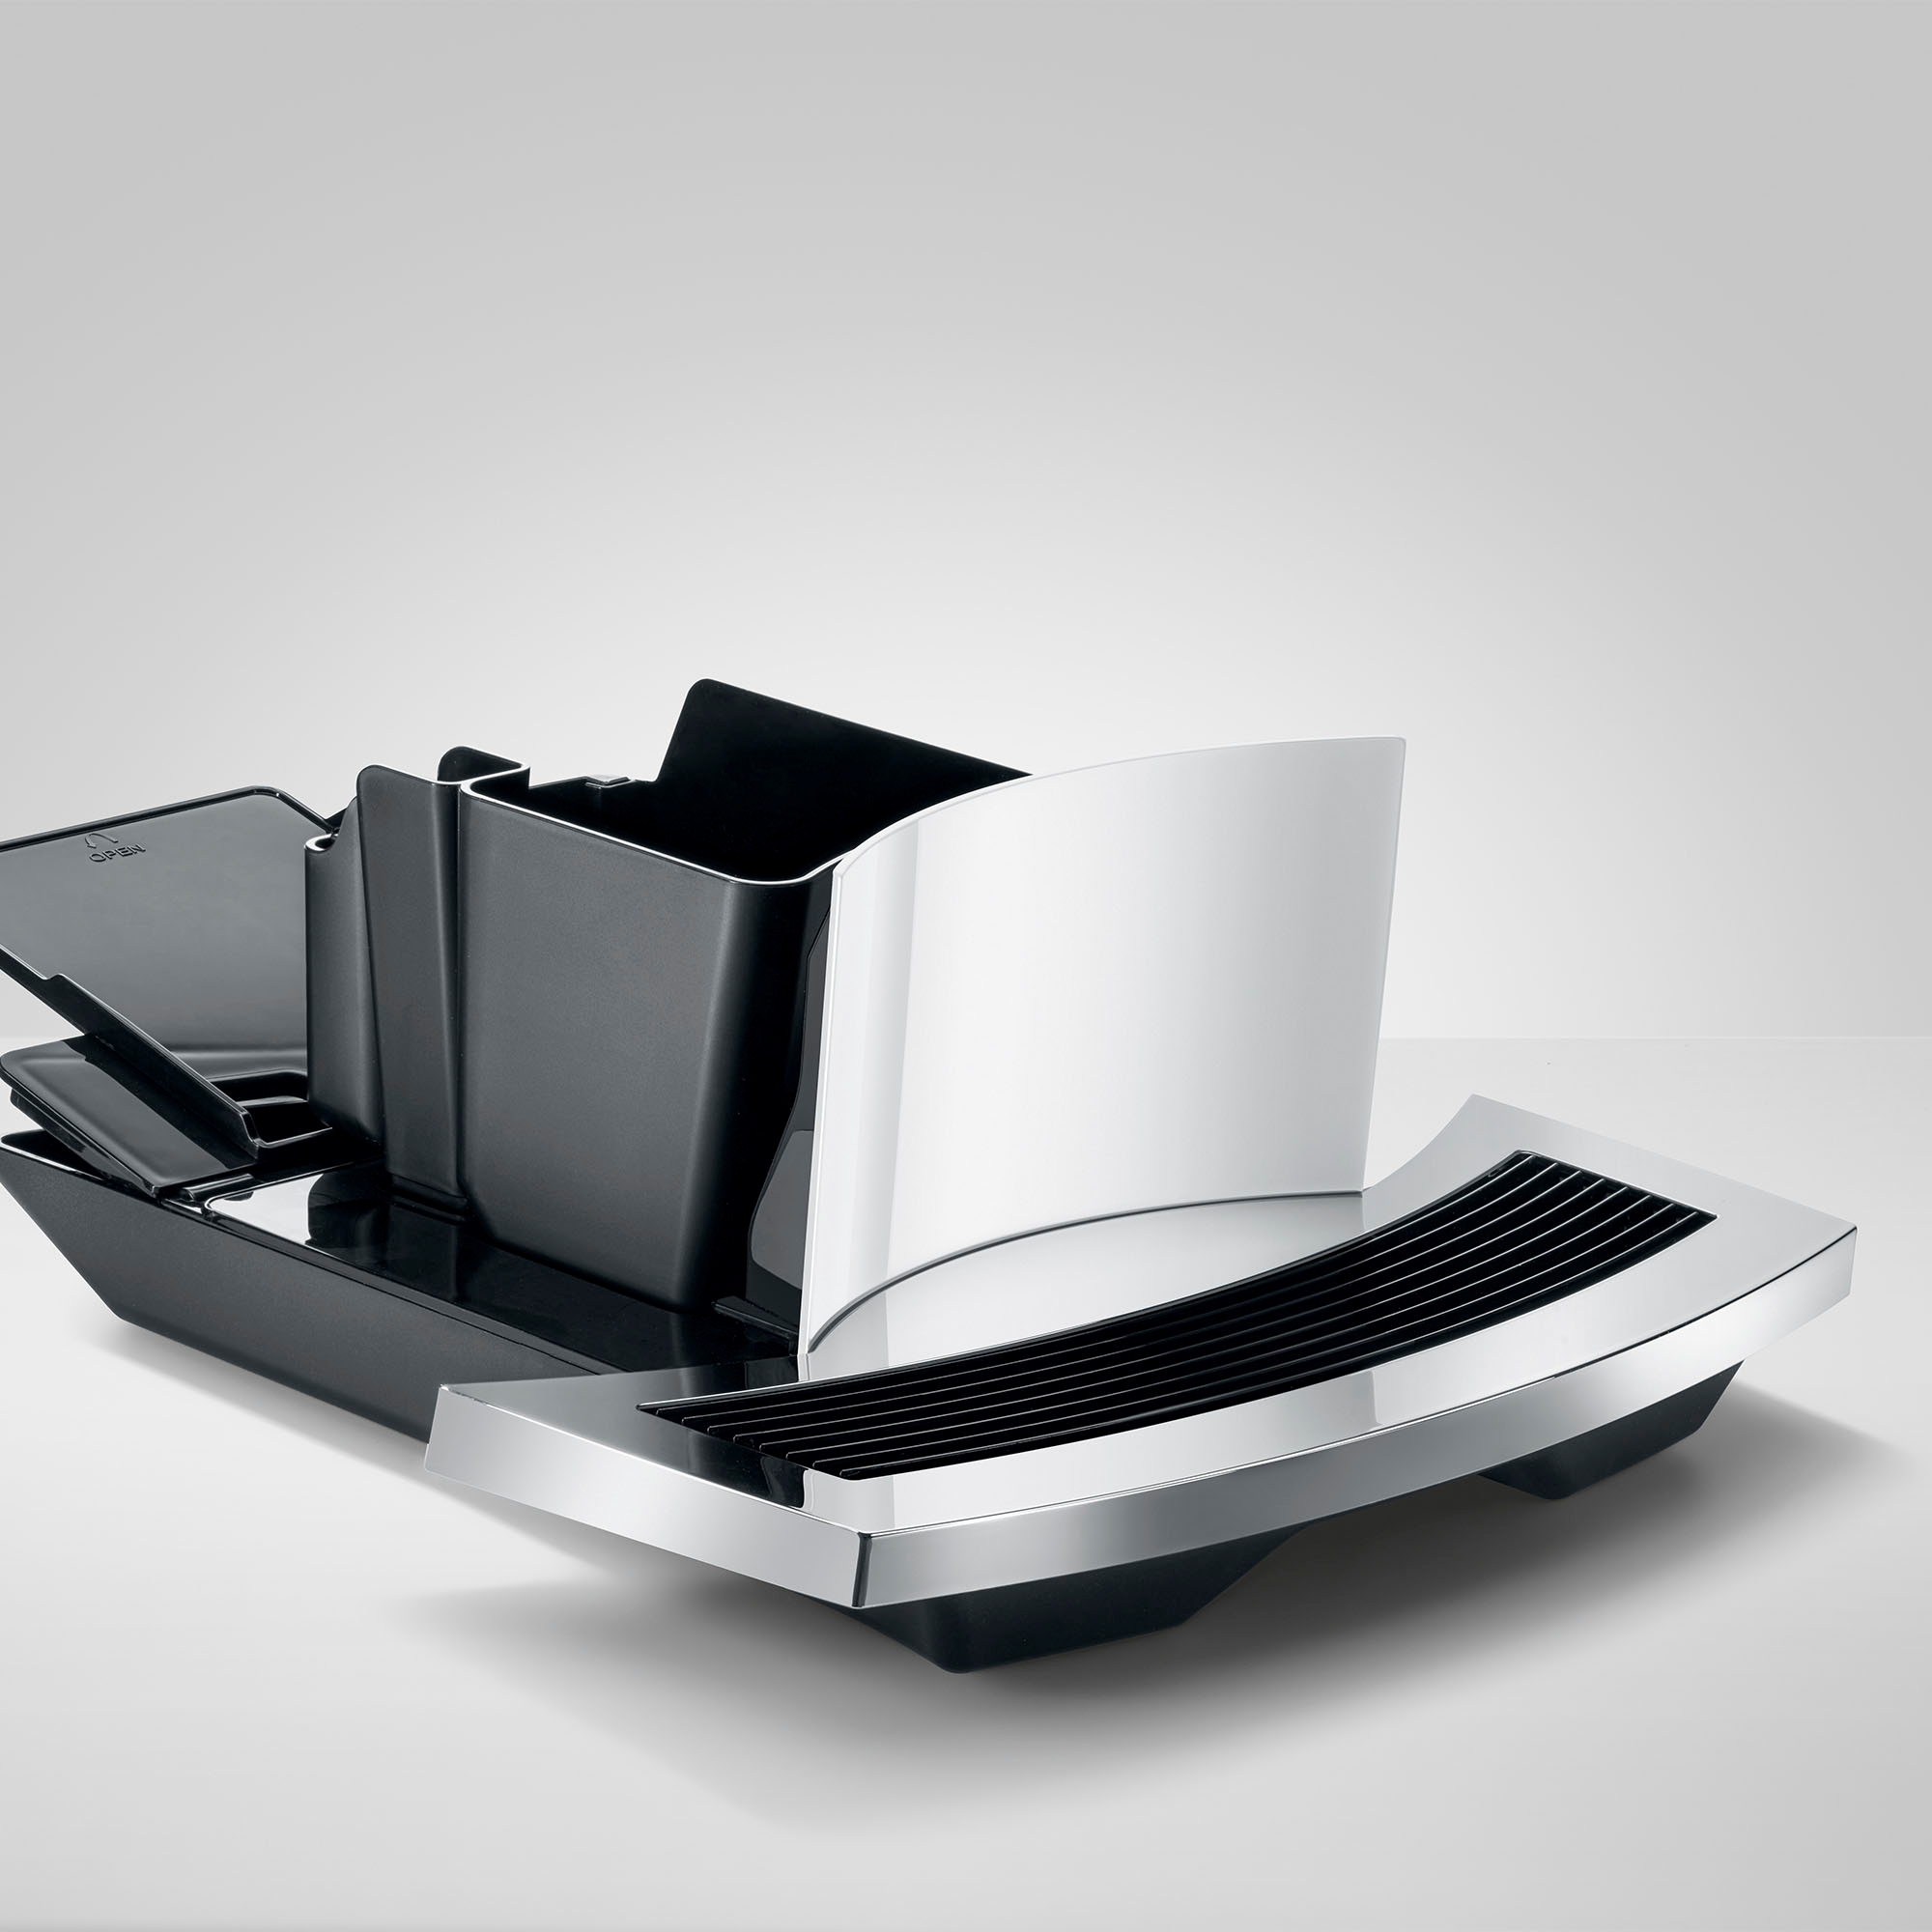 Jura E6 Automatic Coffee Machine - Piano White